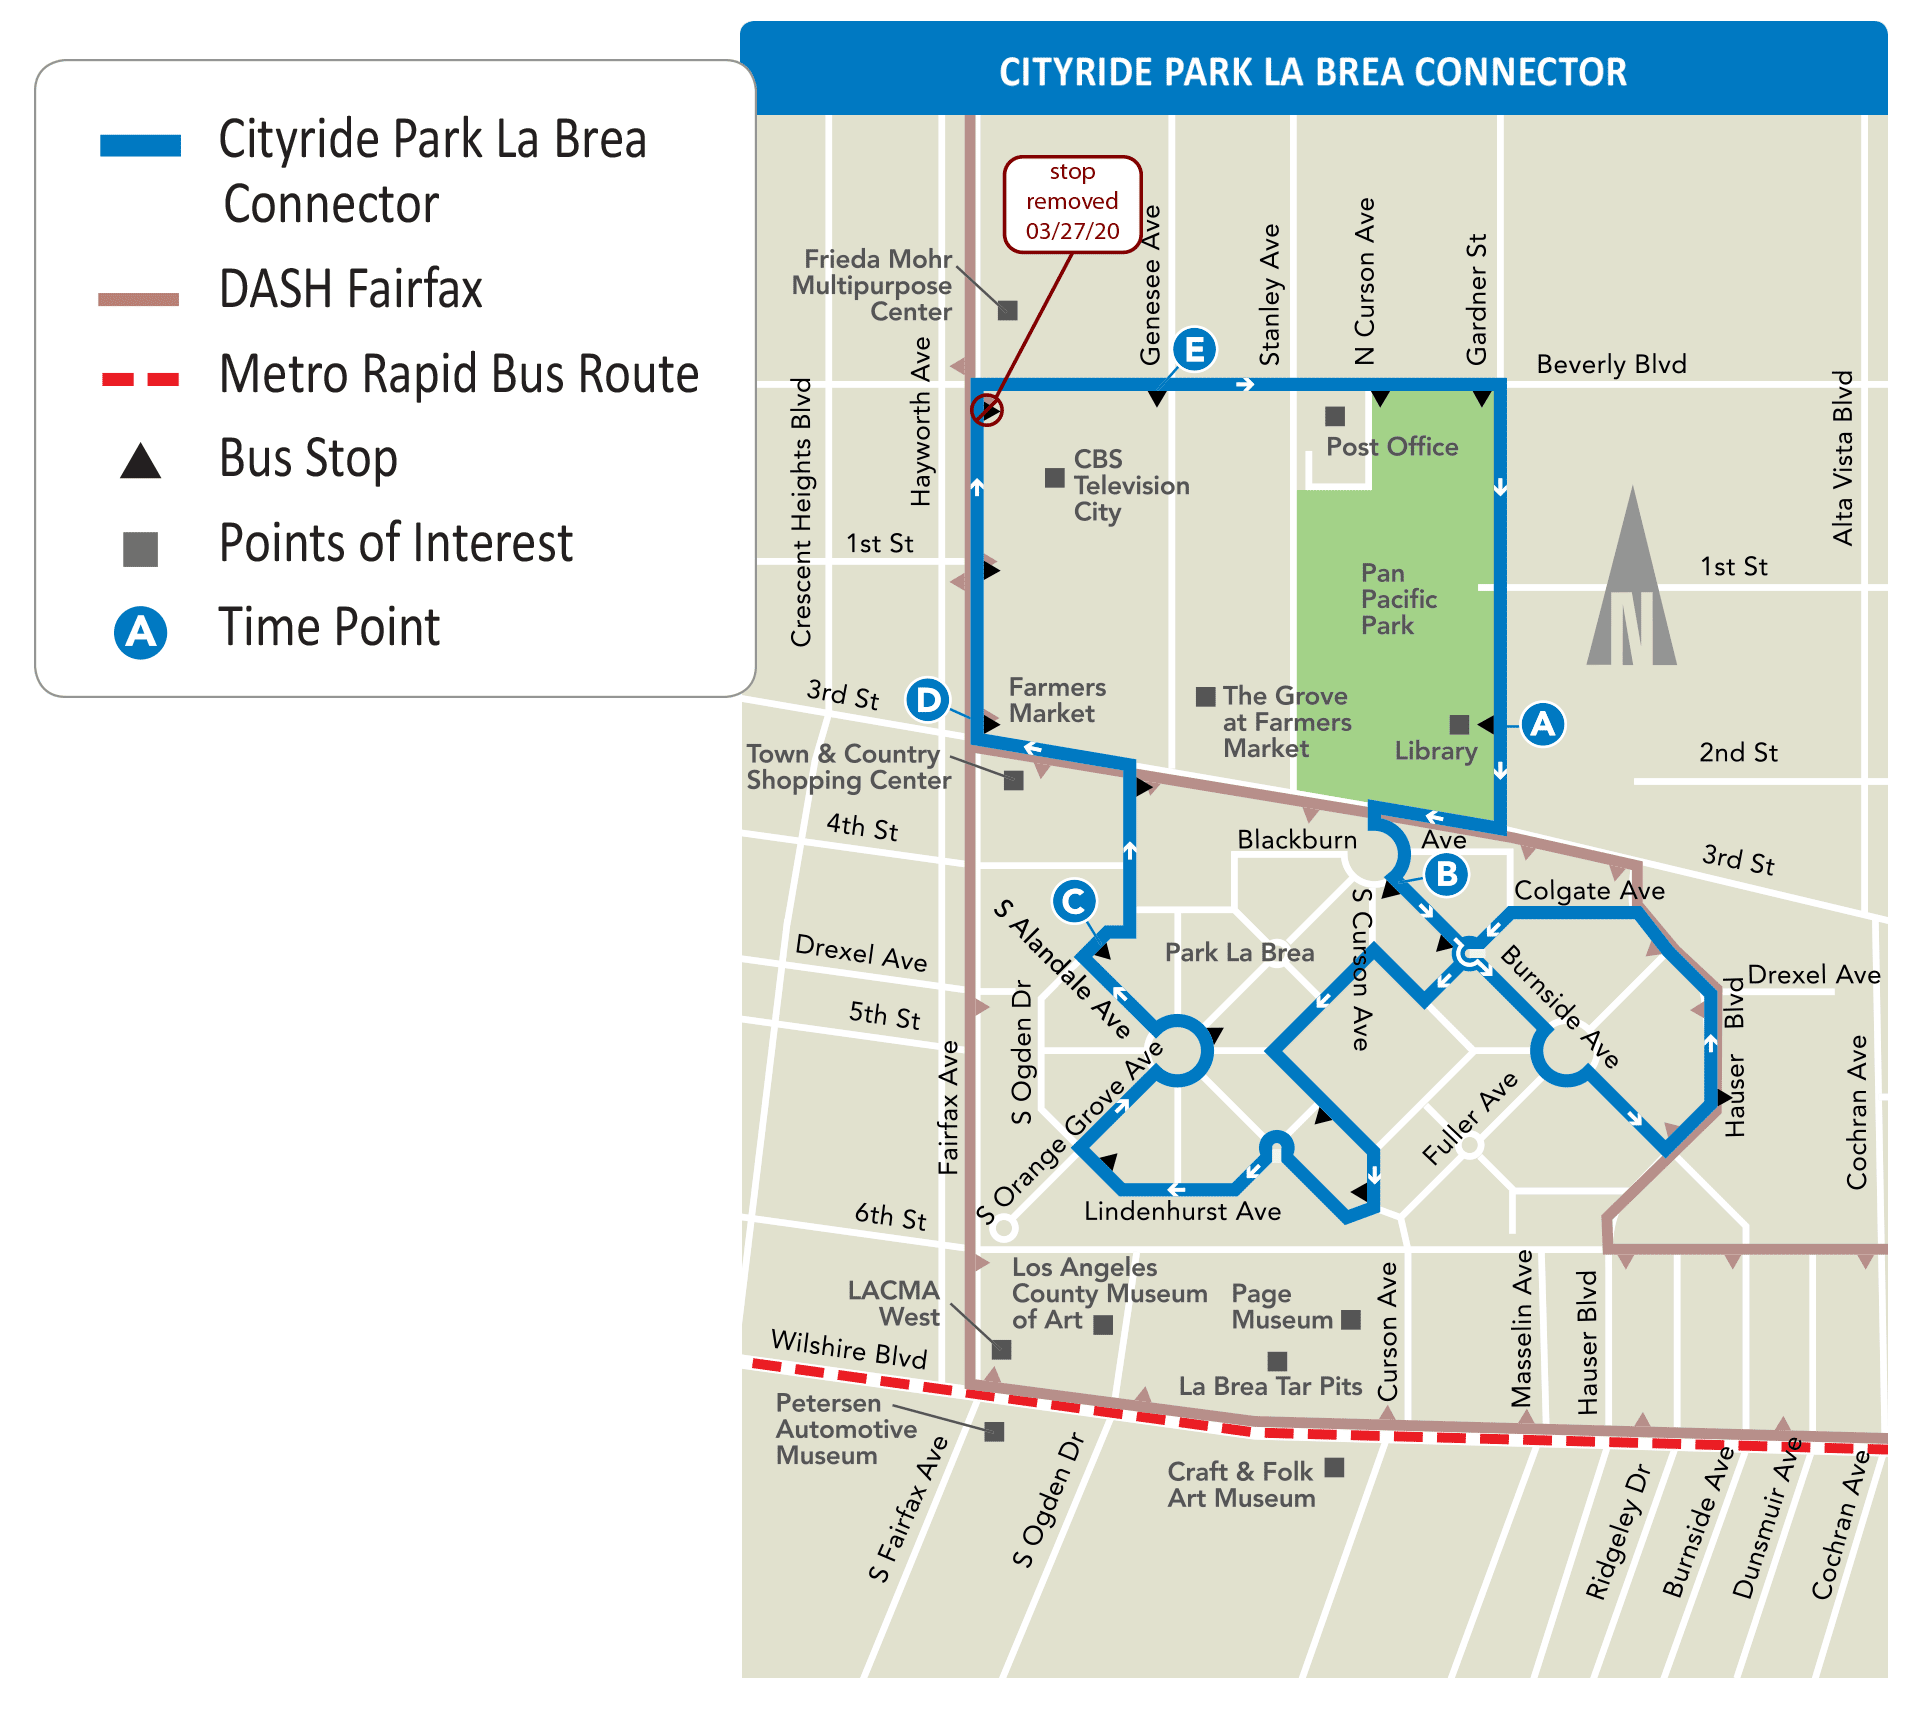 Cityride Park La Brea Connector Map